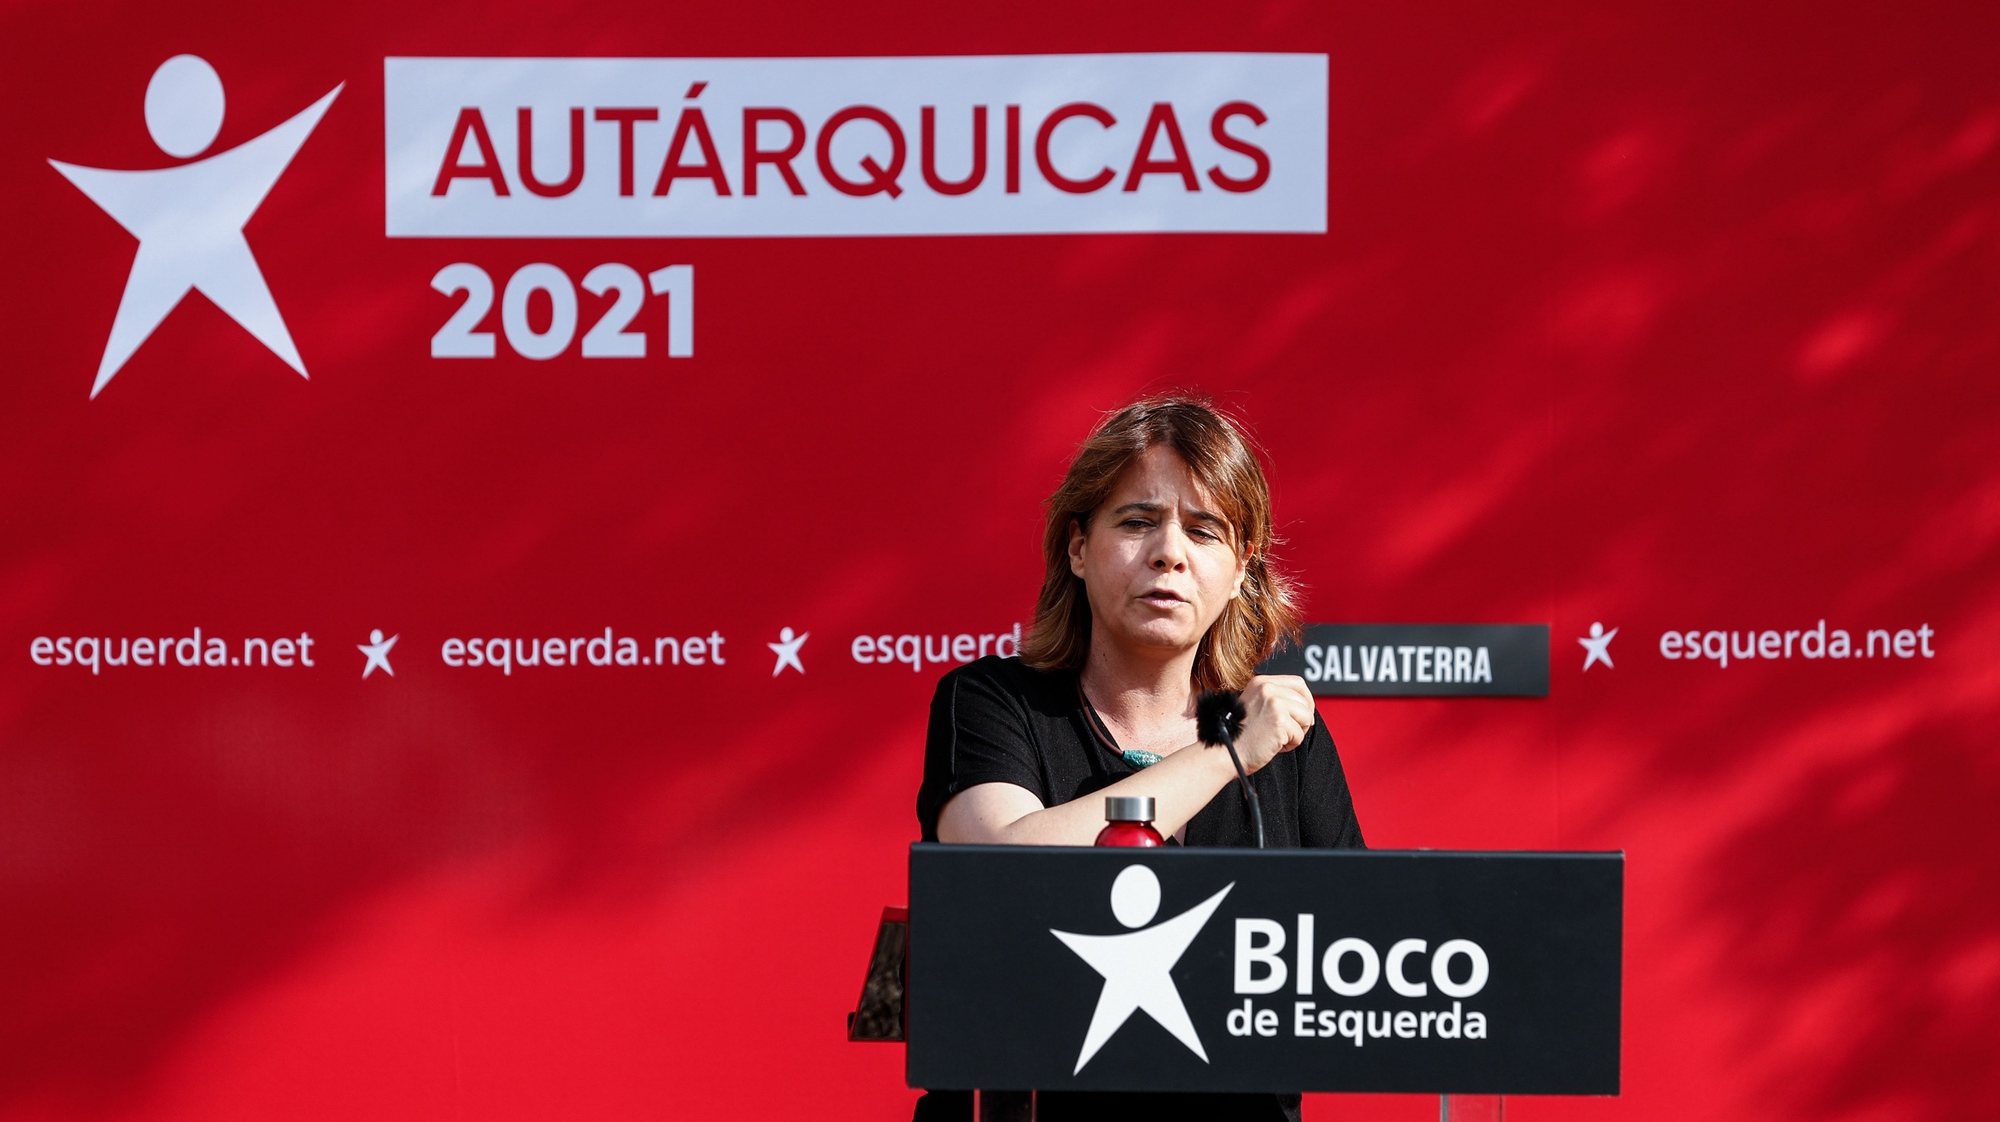 A coordenadora nacional do Bloco de Esquerda (BE), Catarina Martins, intervém durante o comício de apresentação da candidatura de Luís Gomes (ausente na foto), à Câmara Municipal de Salvaterra de Magos, em Santarém ,12 de junho de de 2021. ANTÓNIO COTRIM/LUSA